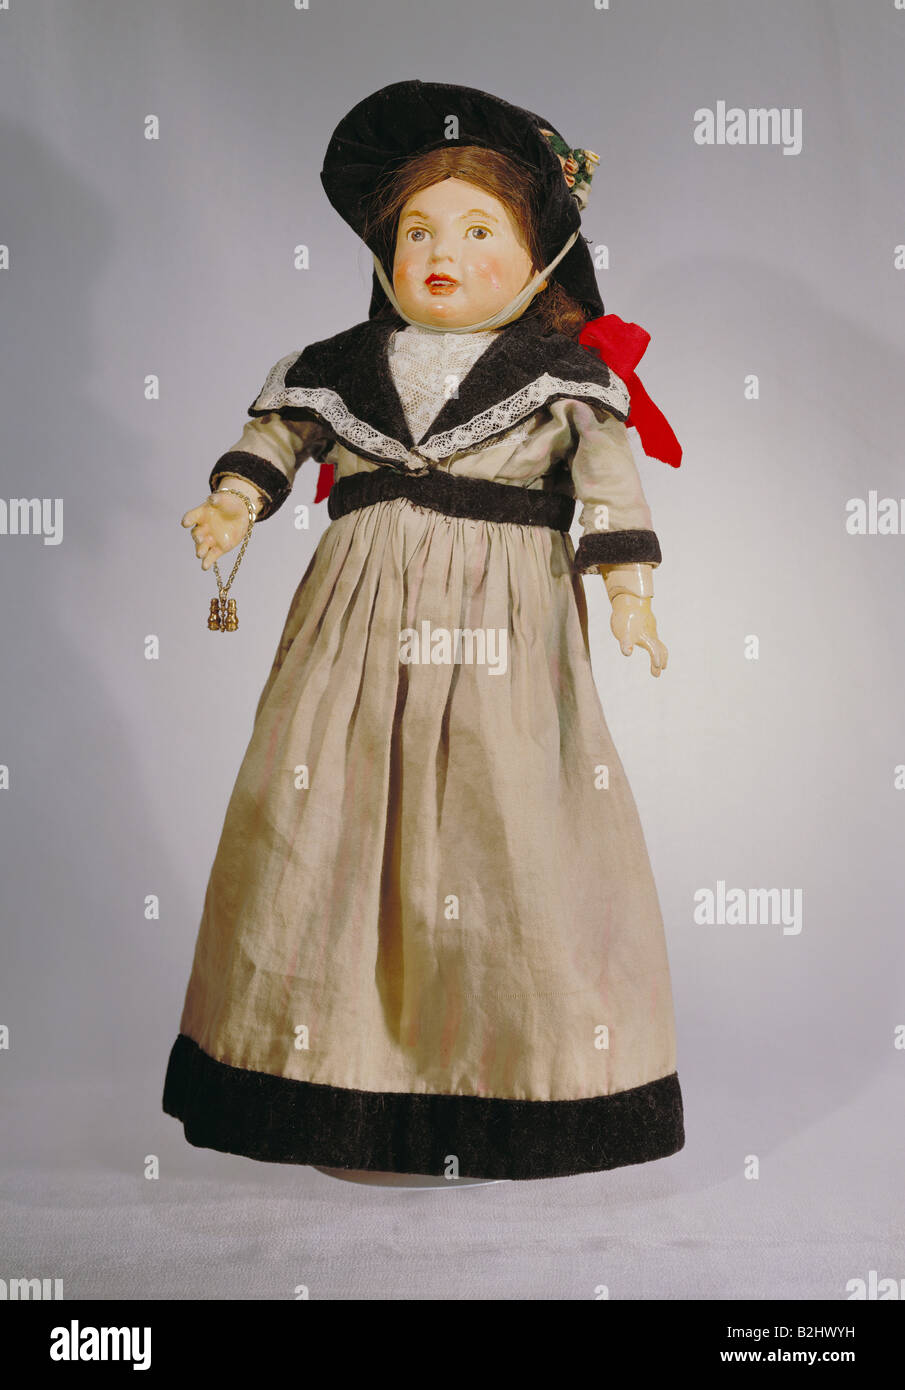 Juguetes, muñecas, 'Reformpuppe' (muñeca de la Reforma), por Marion Kaulitz, altura 46 cm, Munich, Alemania, circa 1908, museo de la muñeca de Munich, Foto de stock